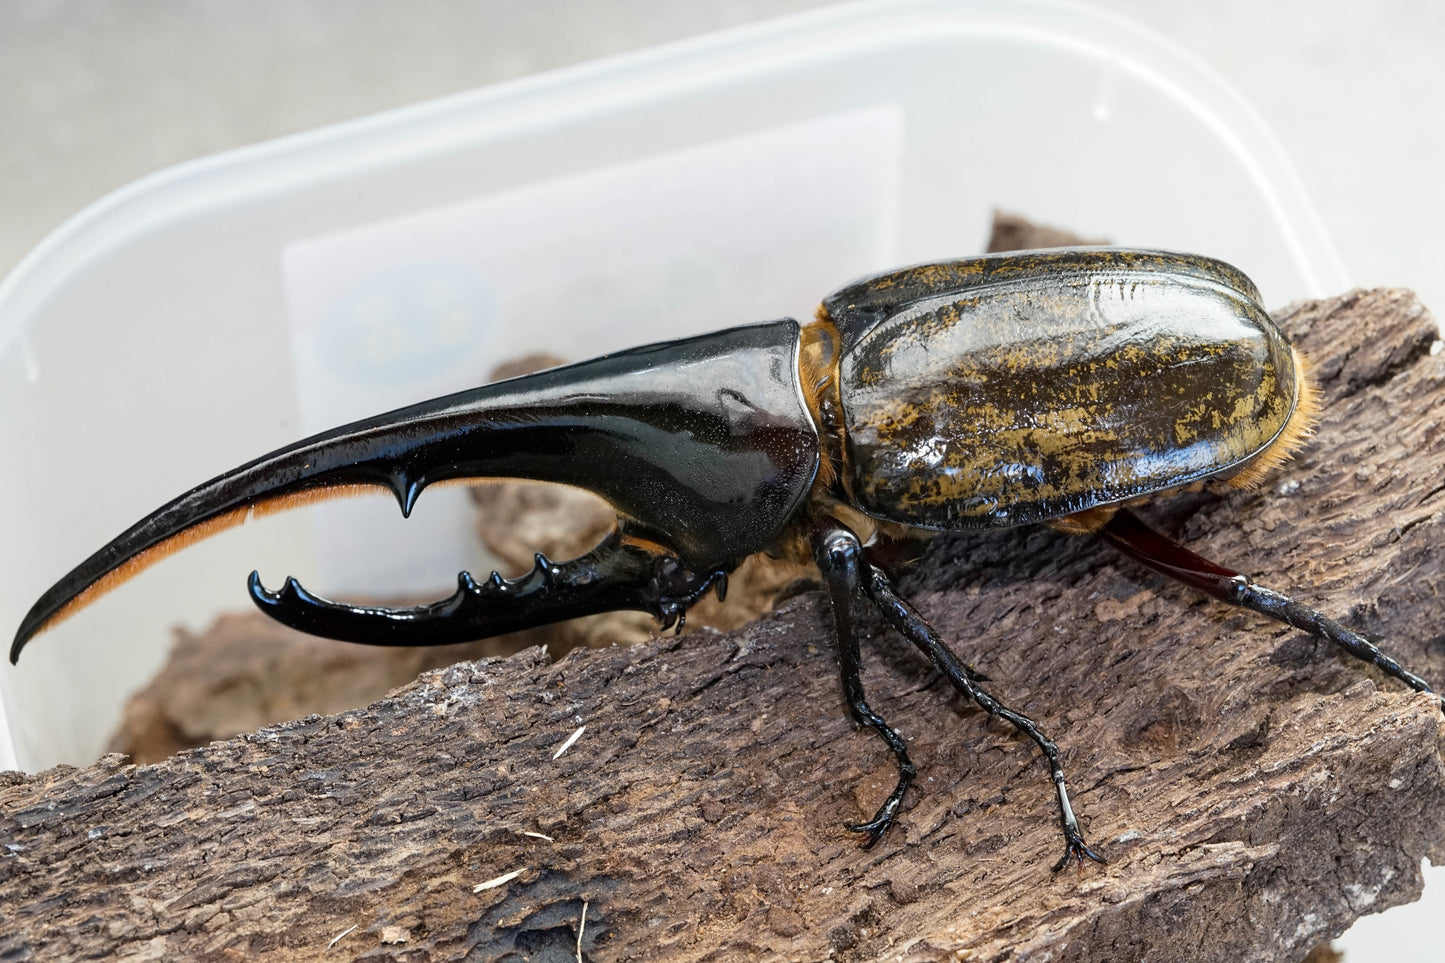 LARVAE: Hercules beetle (Dynastes hercules hercules)